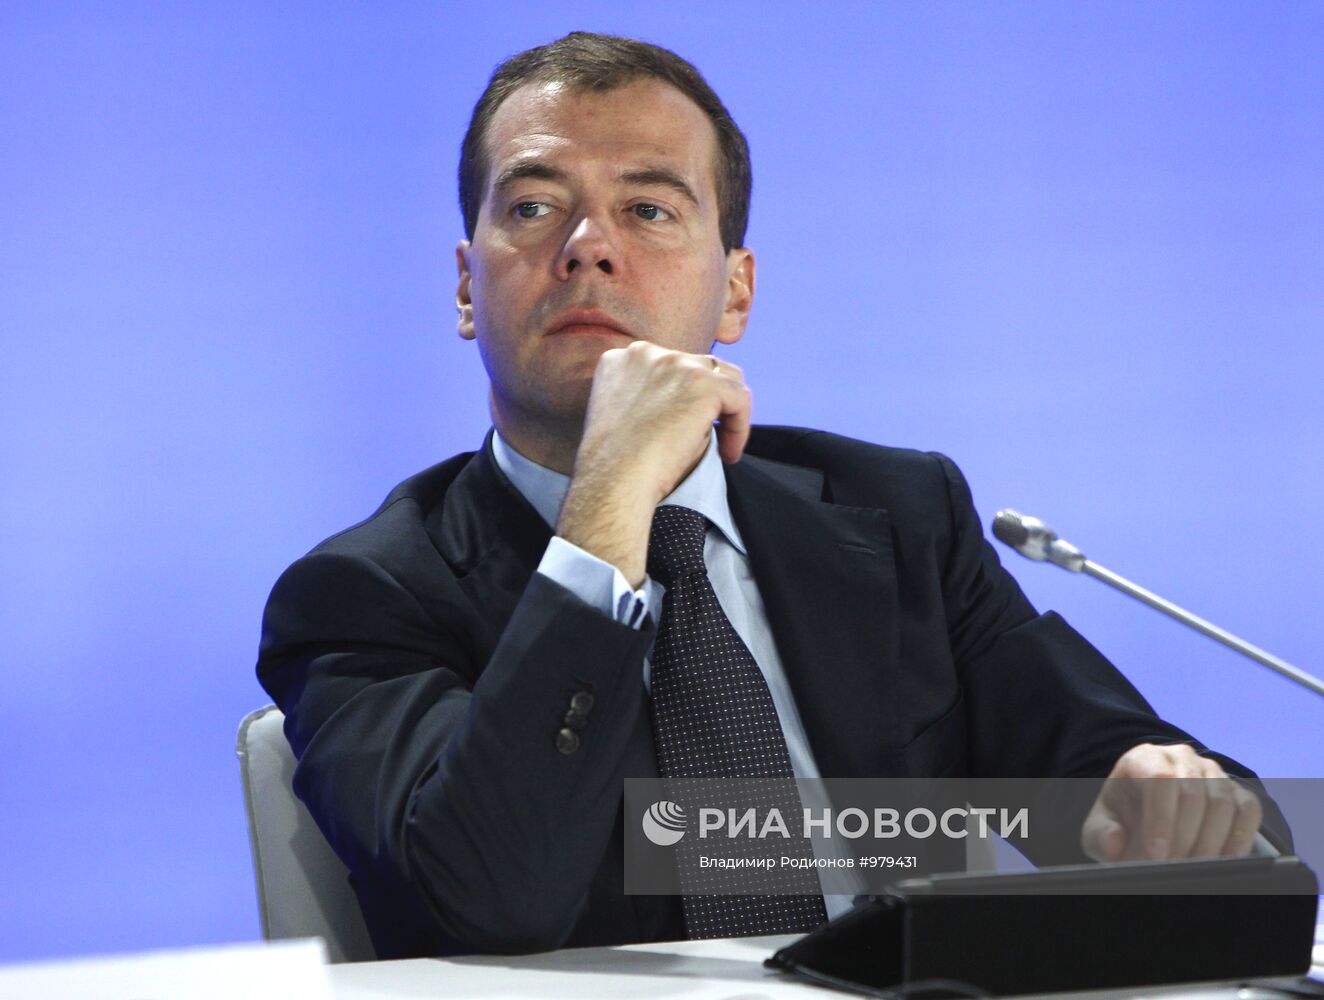 Д.Медведев провел заседание по модернизации и технологиям